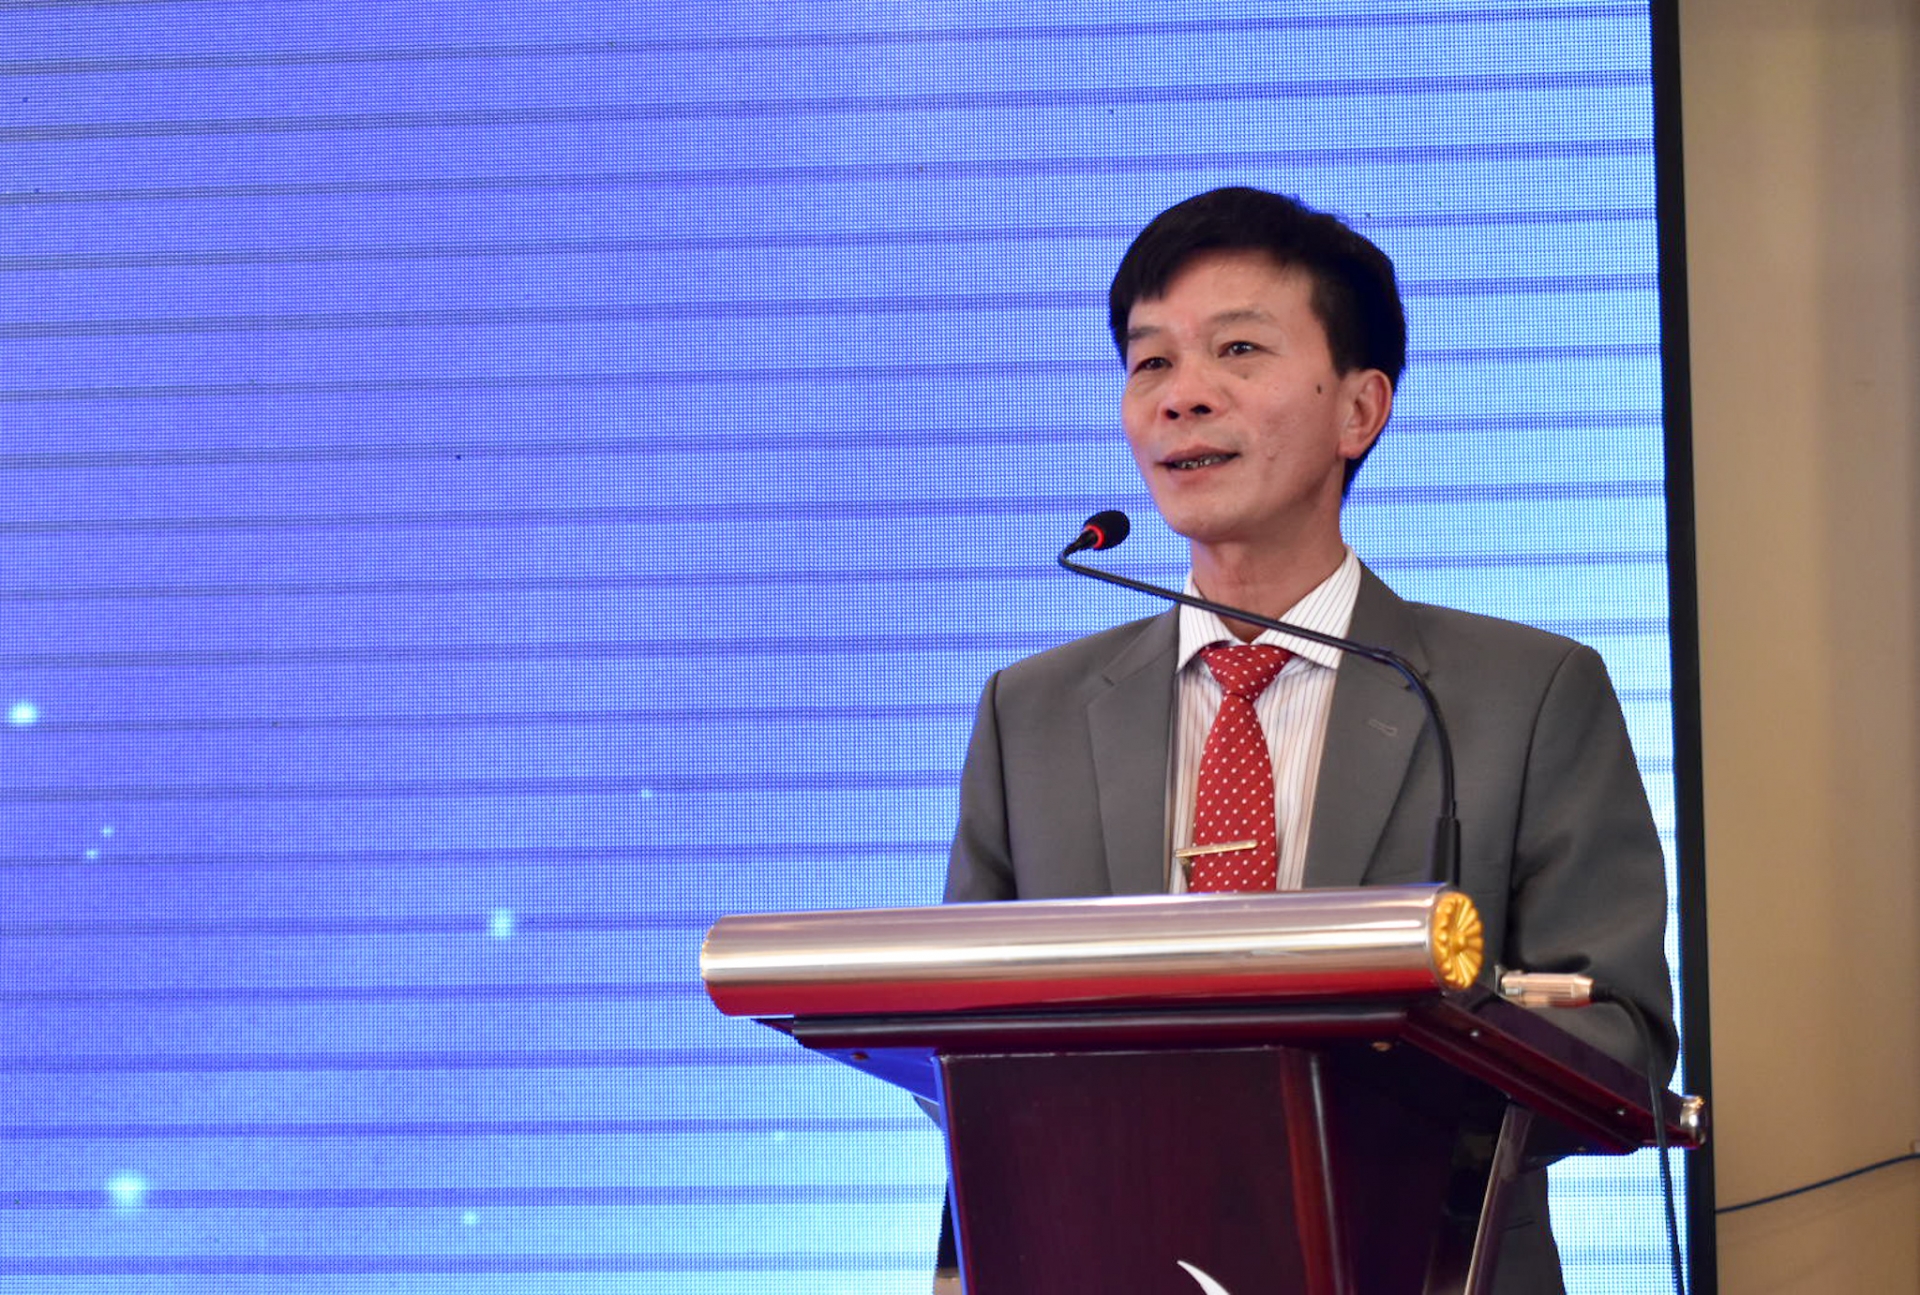  Ông Lê Minh An, Trưởng Ban Tôn giáo - Sở Nội vụ tỉnh Lâm Đồng phát biểu khai mạc hội nghị 